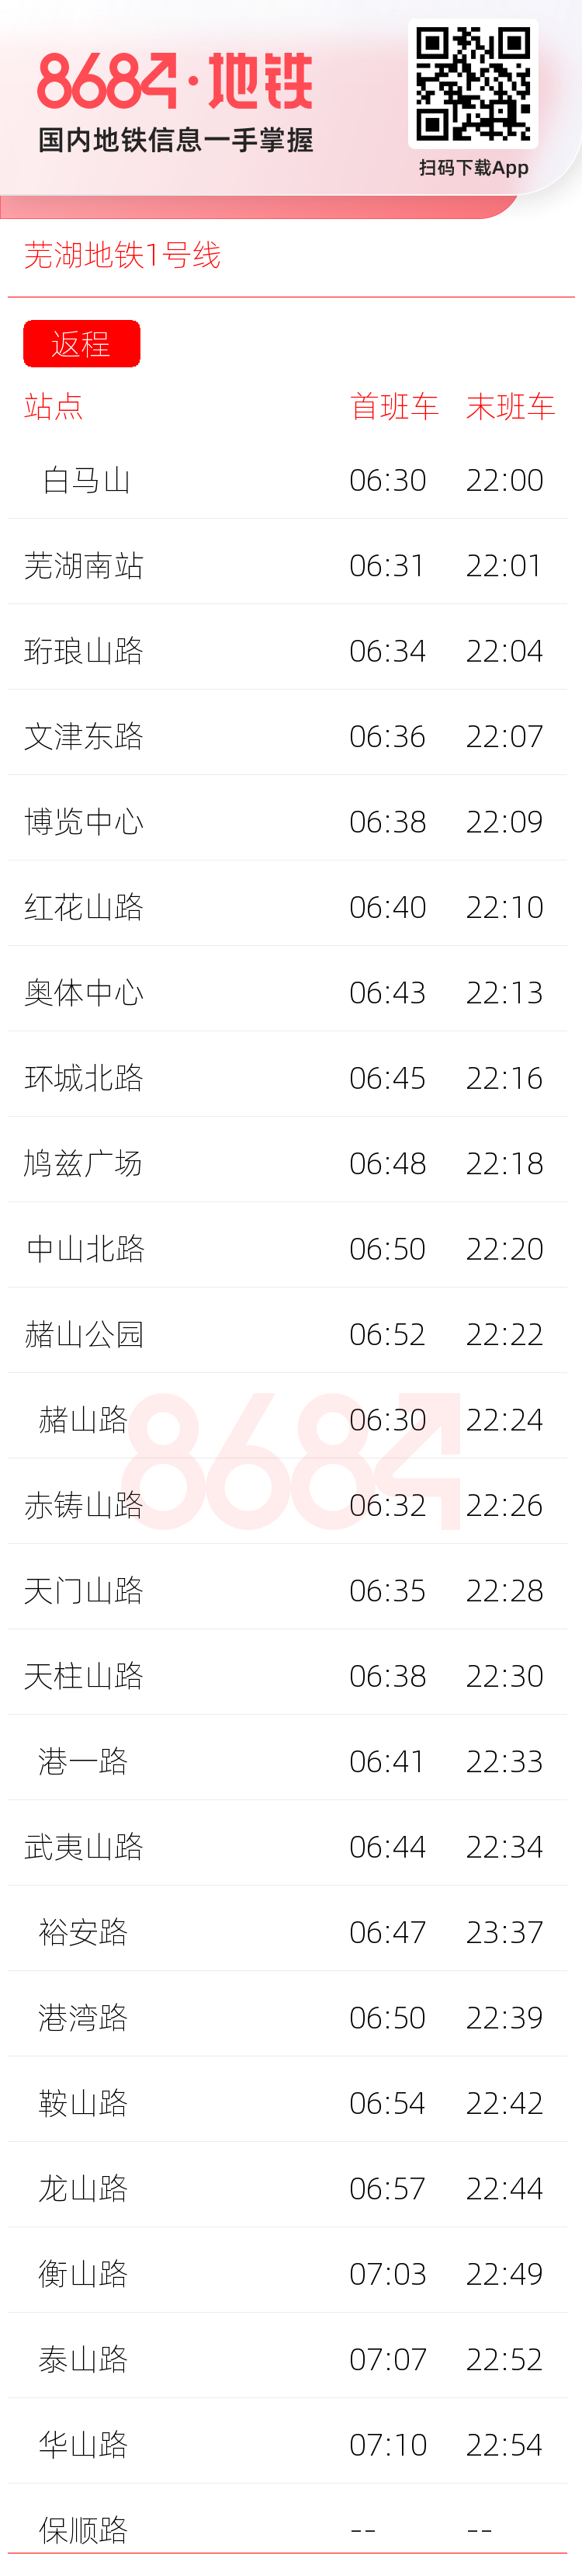 芜湖地铁1号线运营时间表